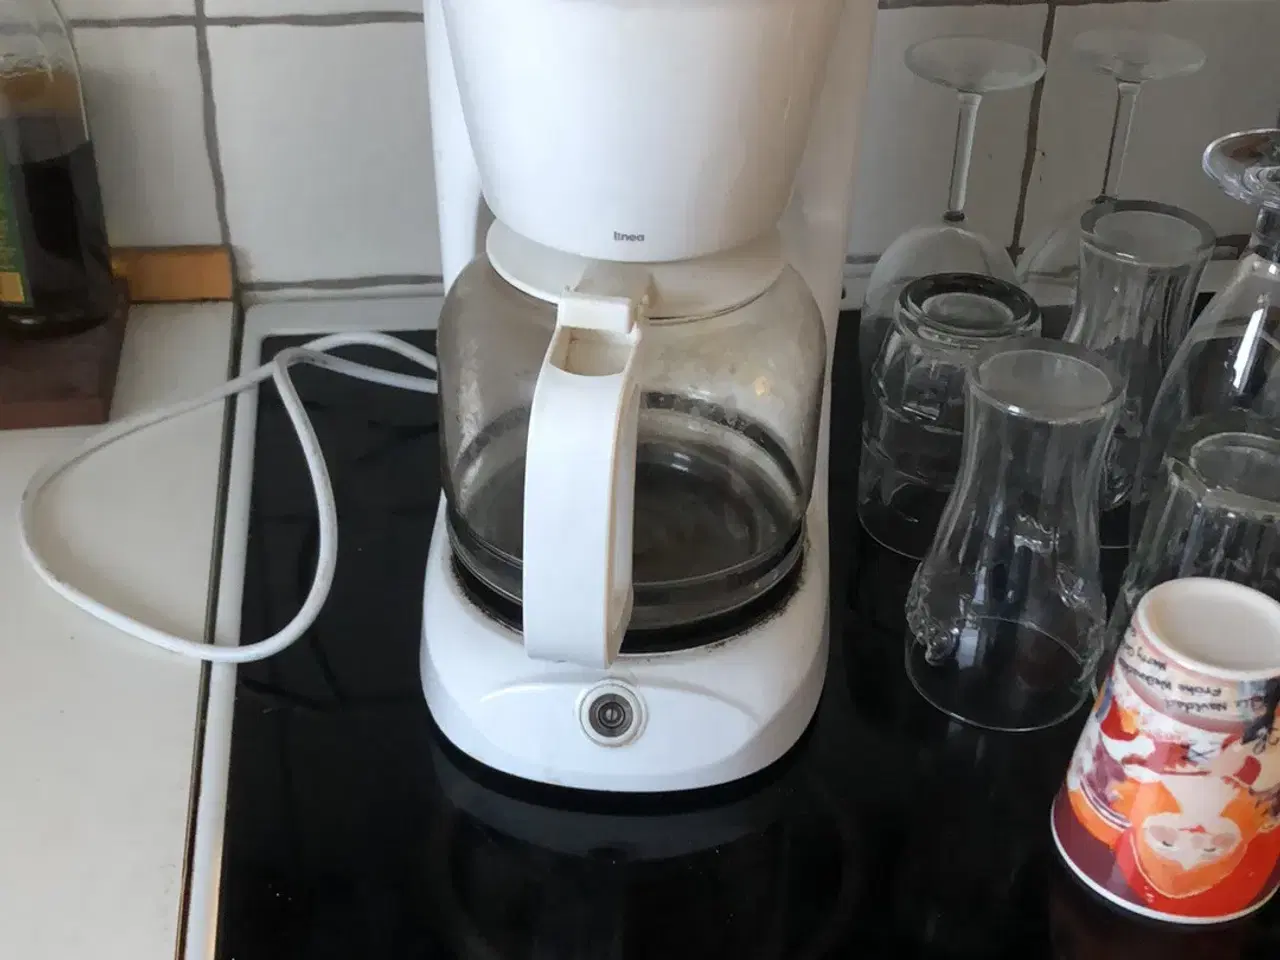 Billede 2 - Linea kaffemaskine, glas gerne hurtig væk god kval